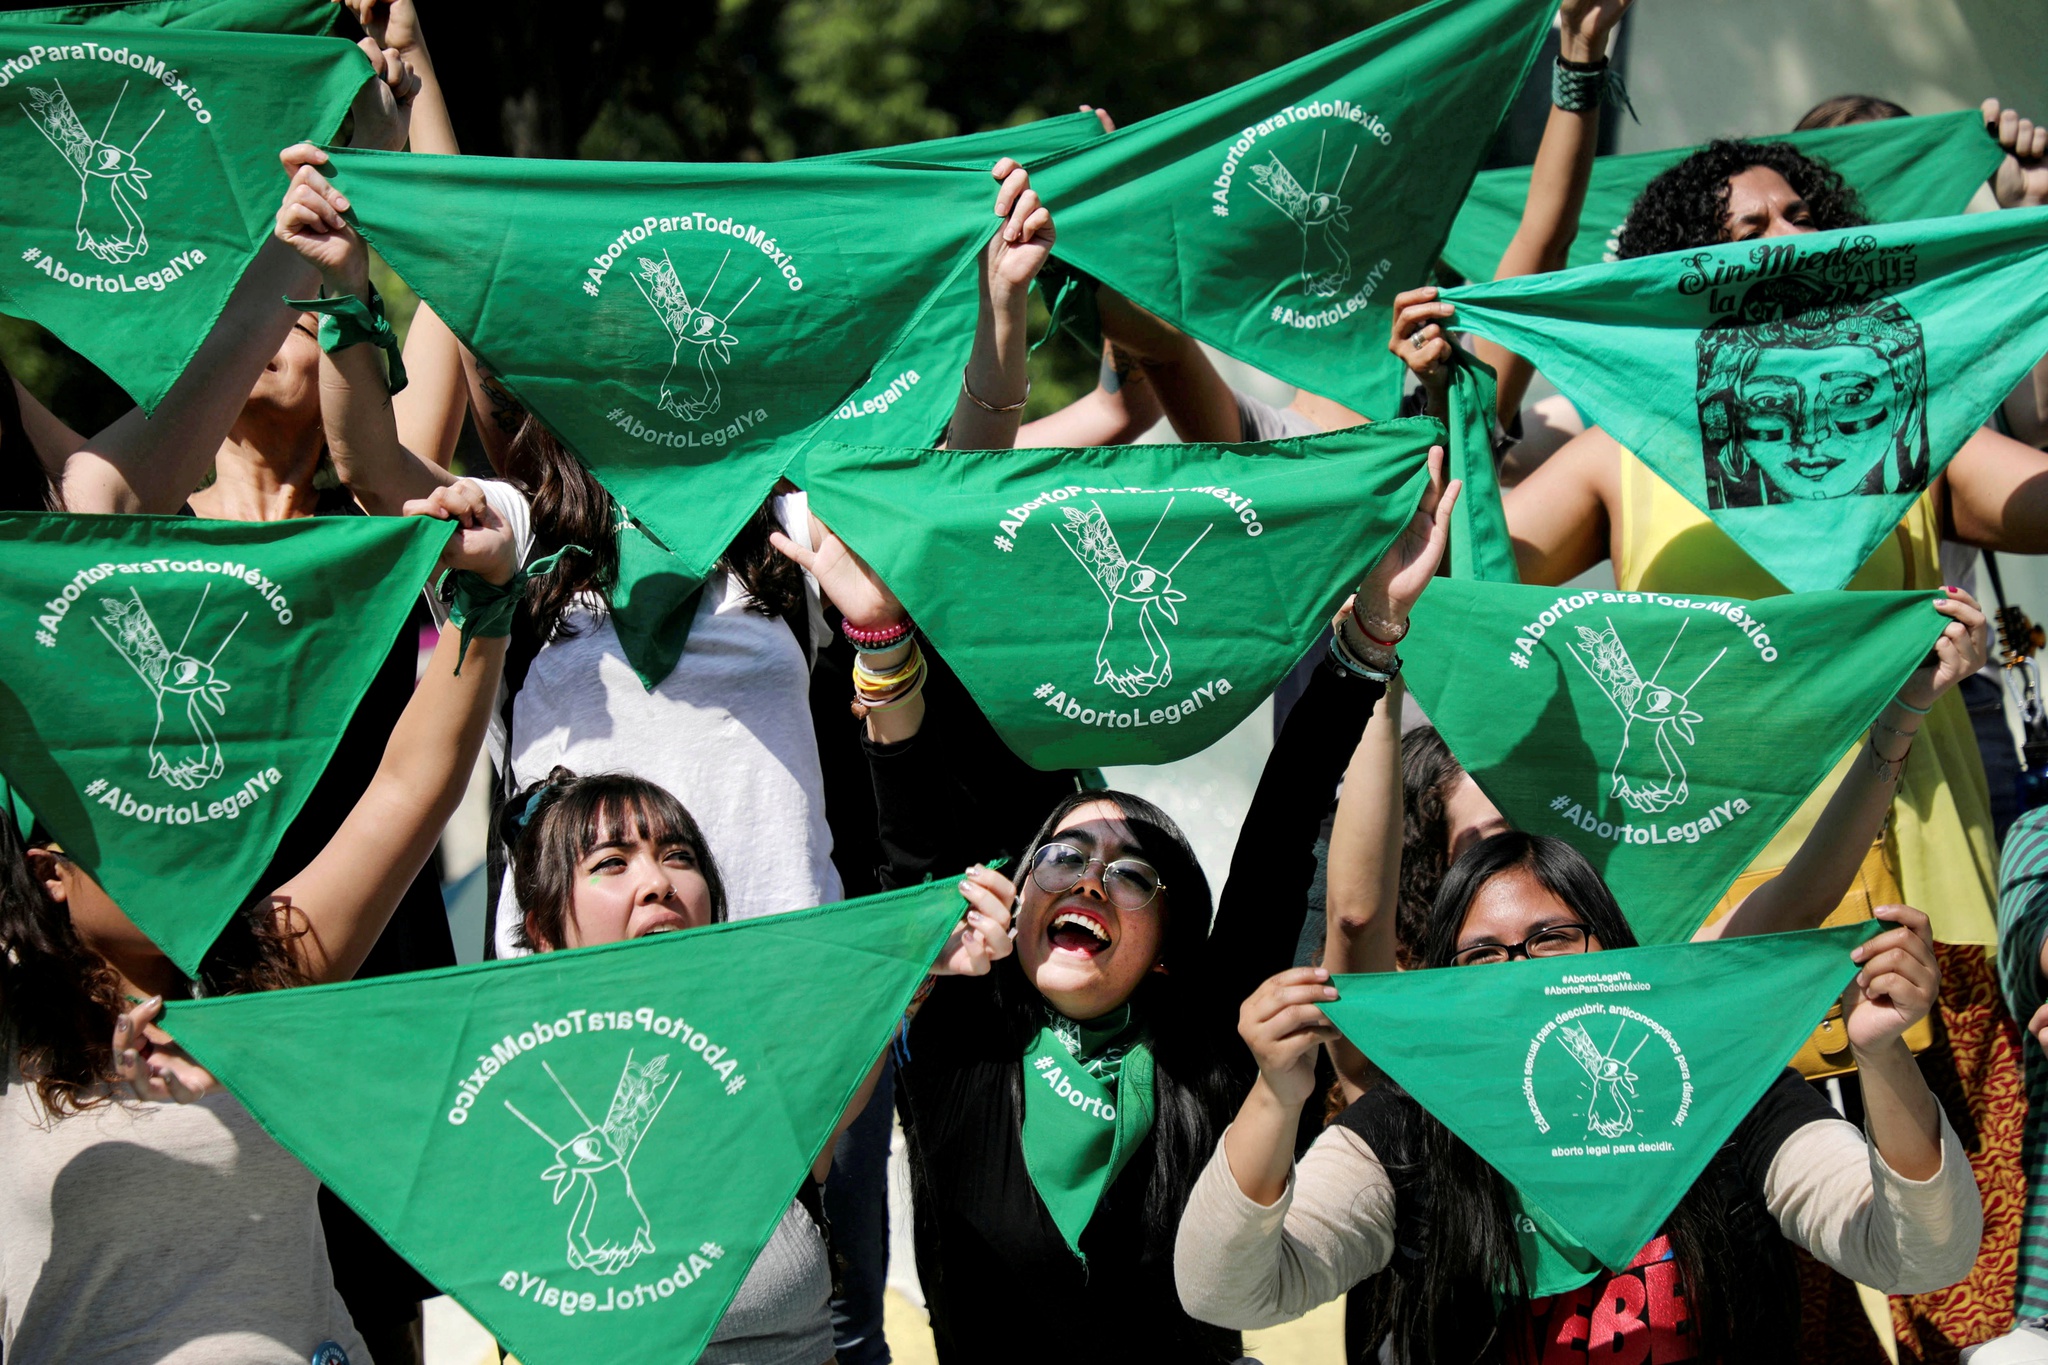 La Corte Suprema de México defiende el derecho al aborto en todo el país |  Aborto